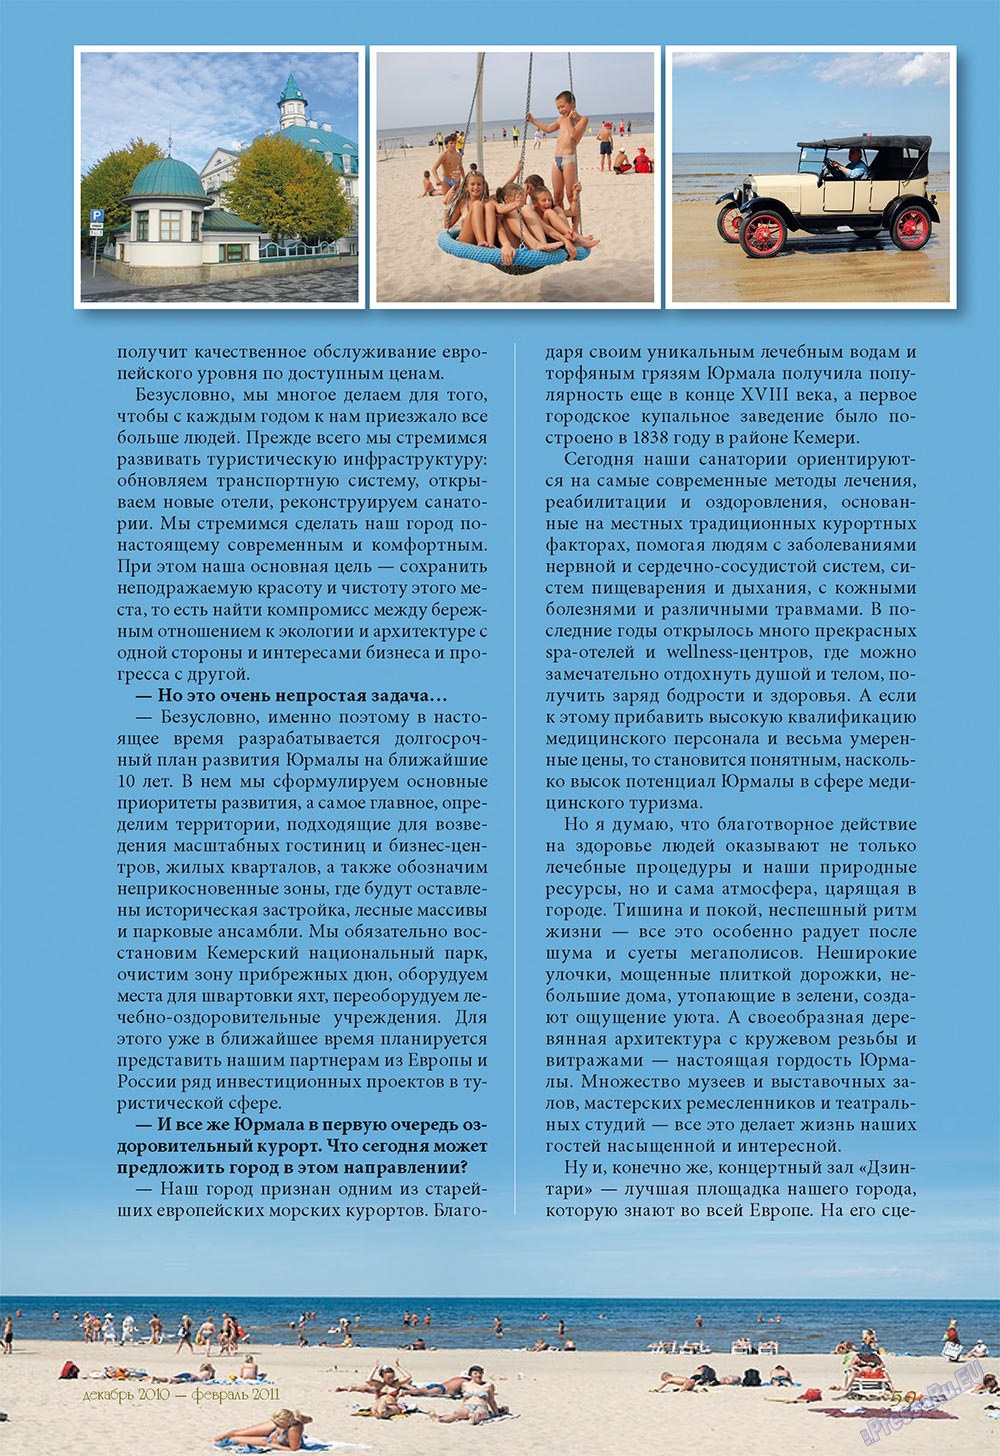 Le Voyageur (журнал). 2010 год, номер 14, стр. 64